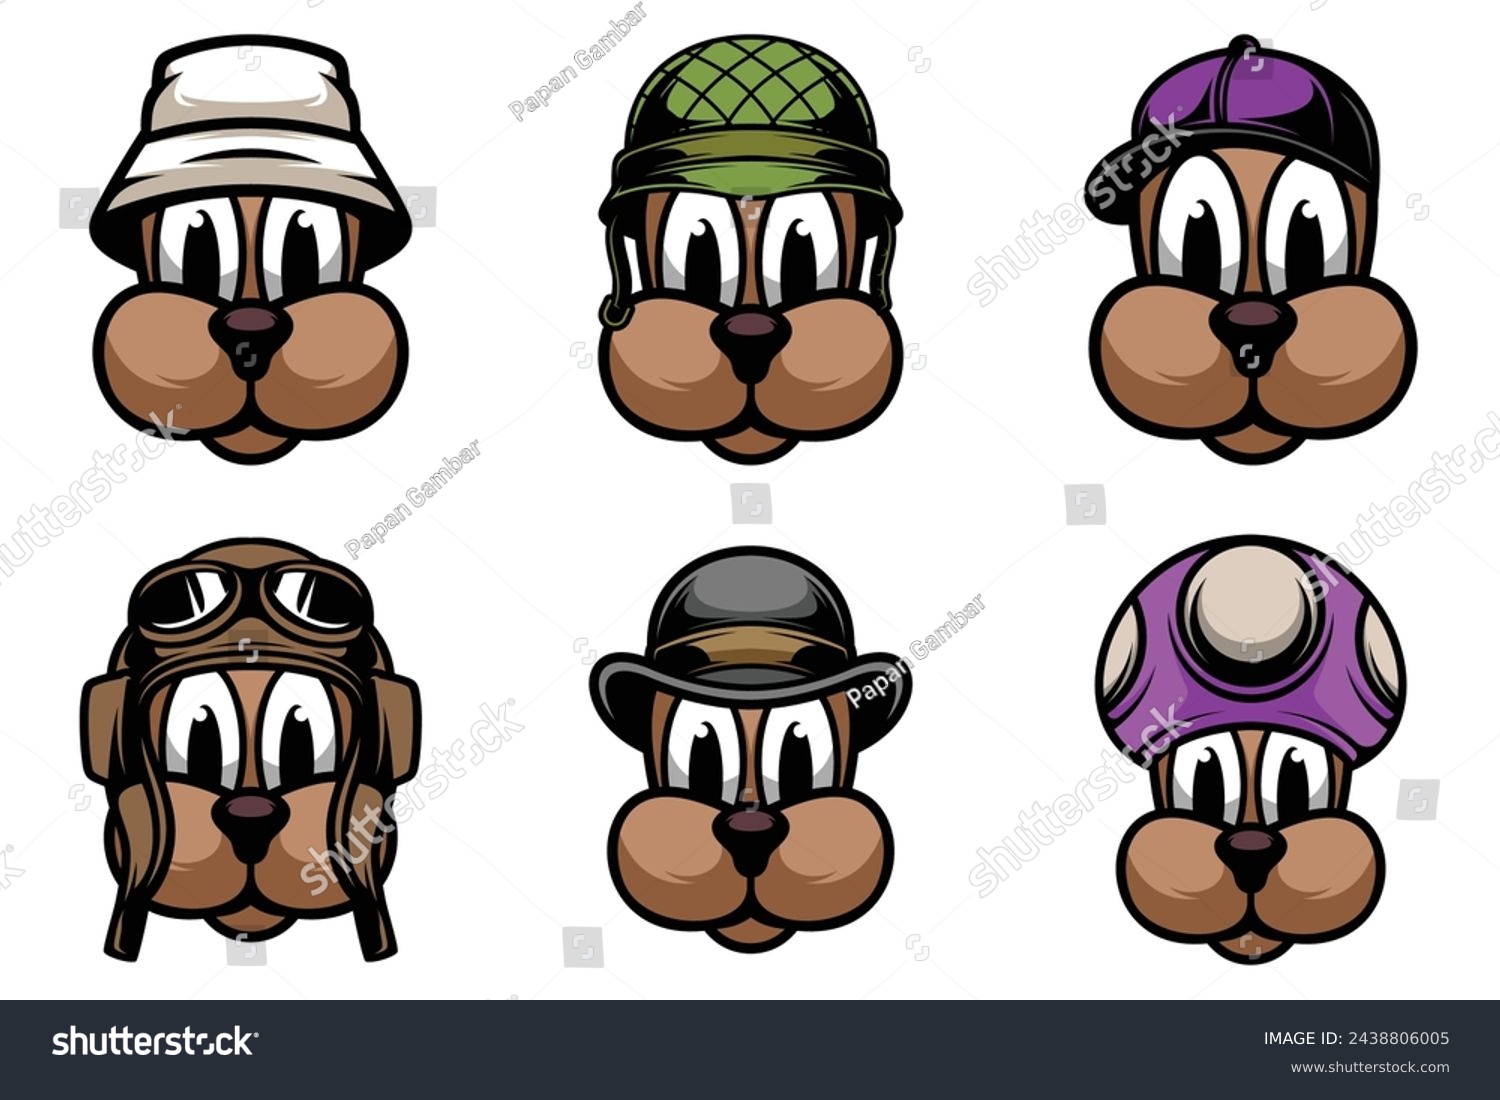 SVG of Dog Bundle Mascot Design Vector svg